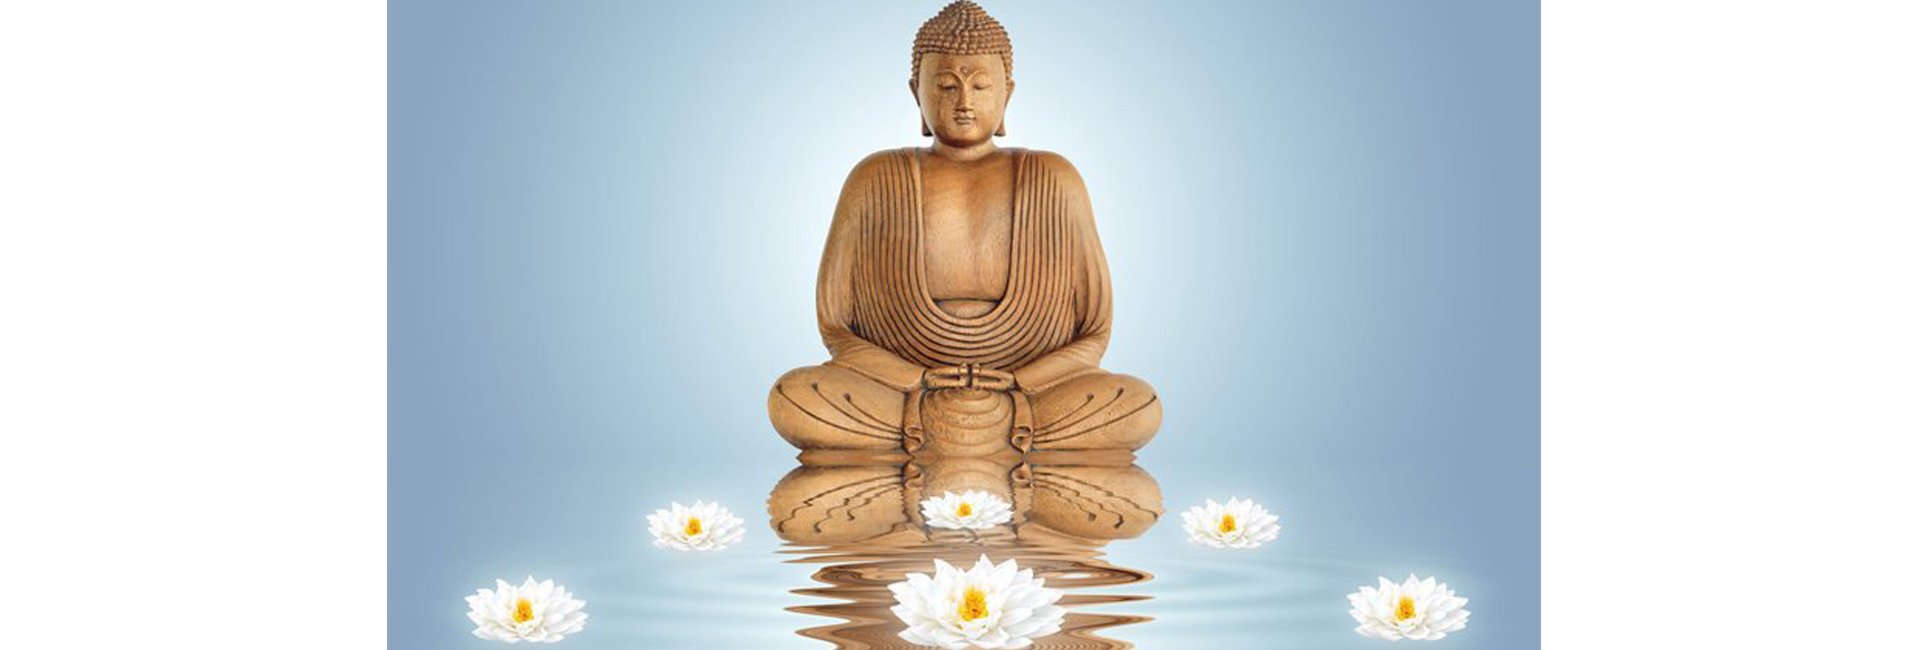 Equilíbrio e vitalidade | Curso prático de Meditação